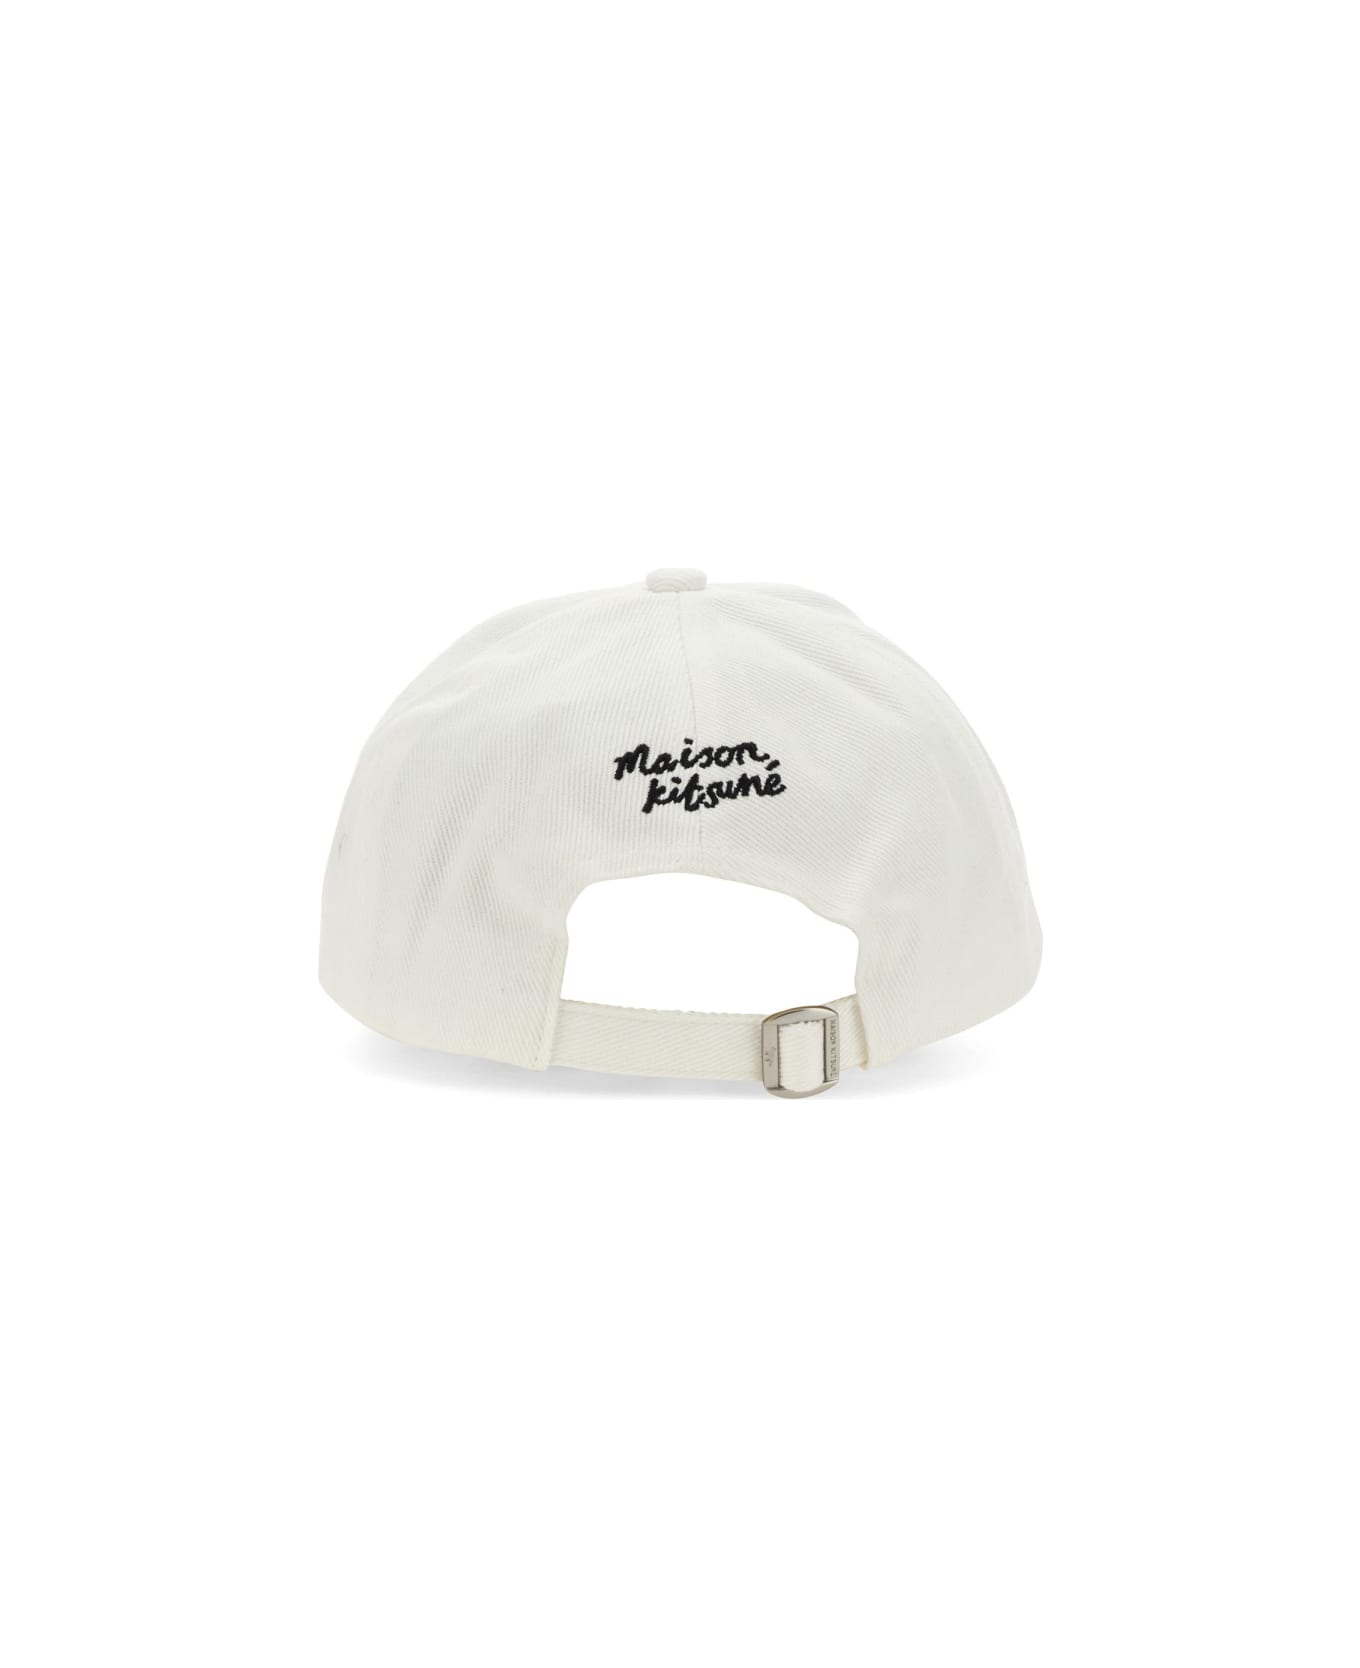 Maison Kitsuné Cotton Baseball Cap - WHITE 帽子